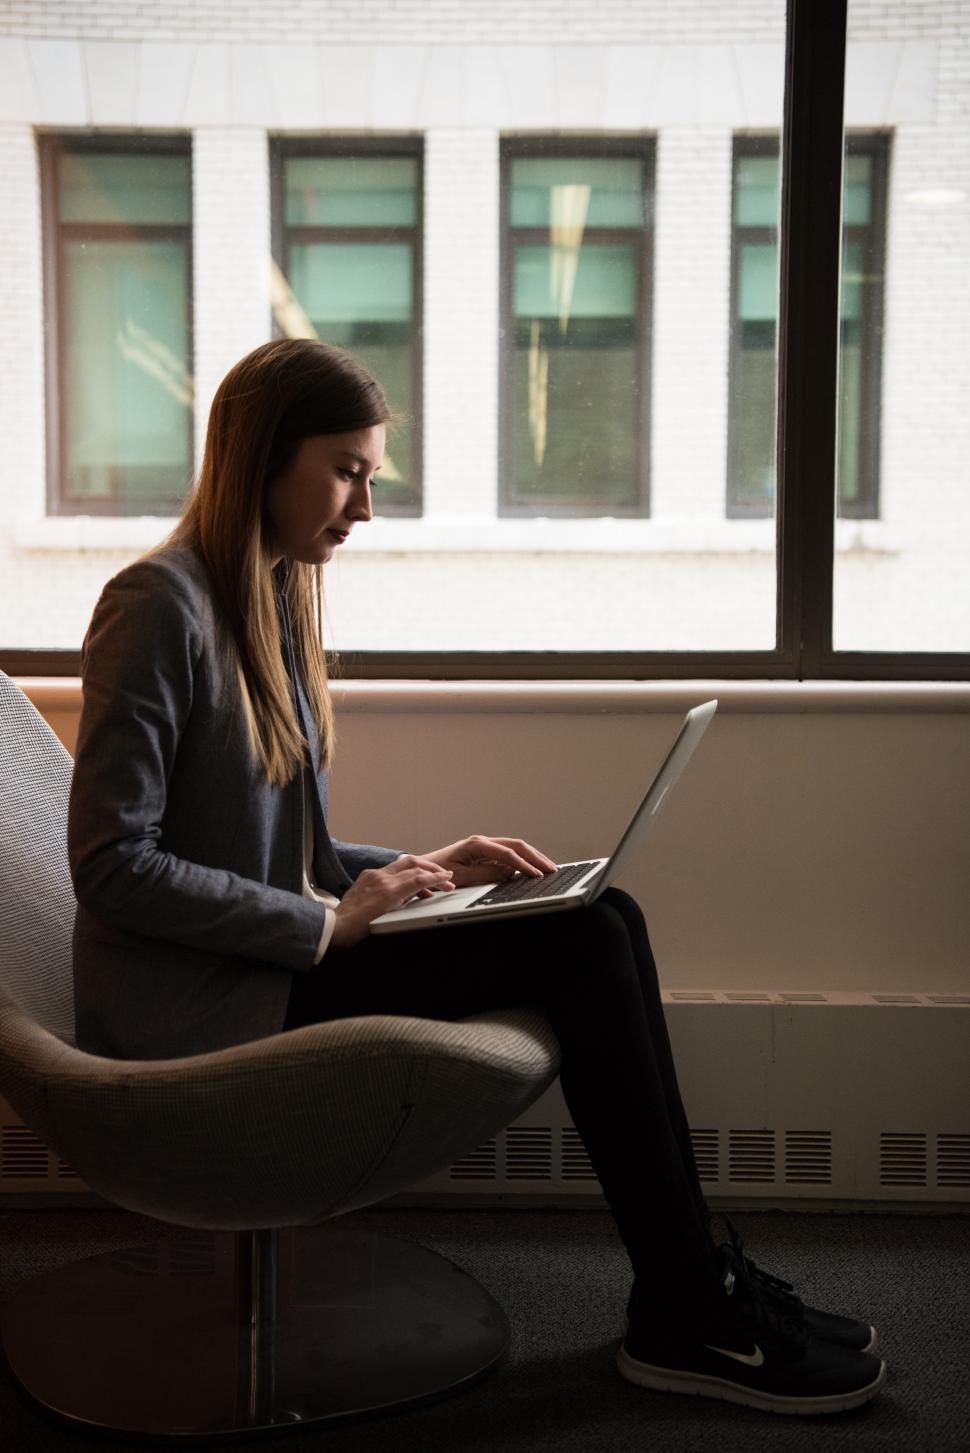 Free Image of Female using laptop near window in office 